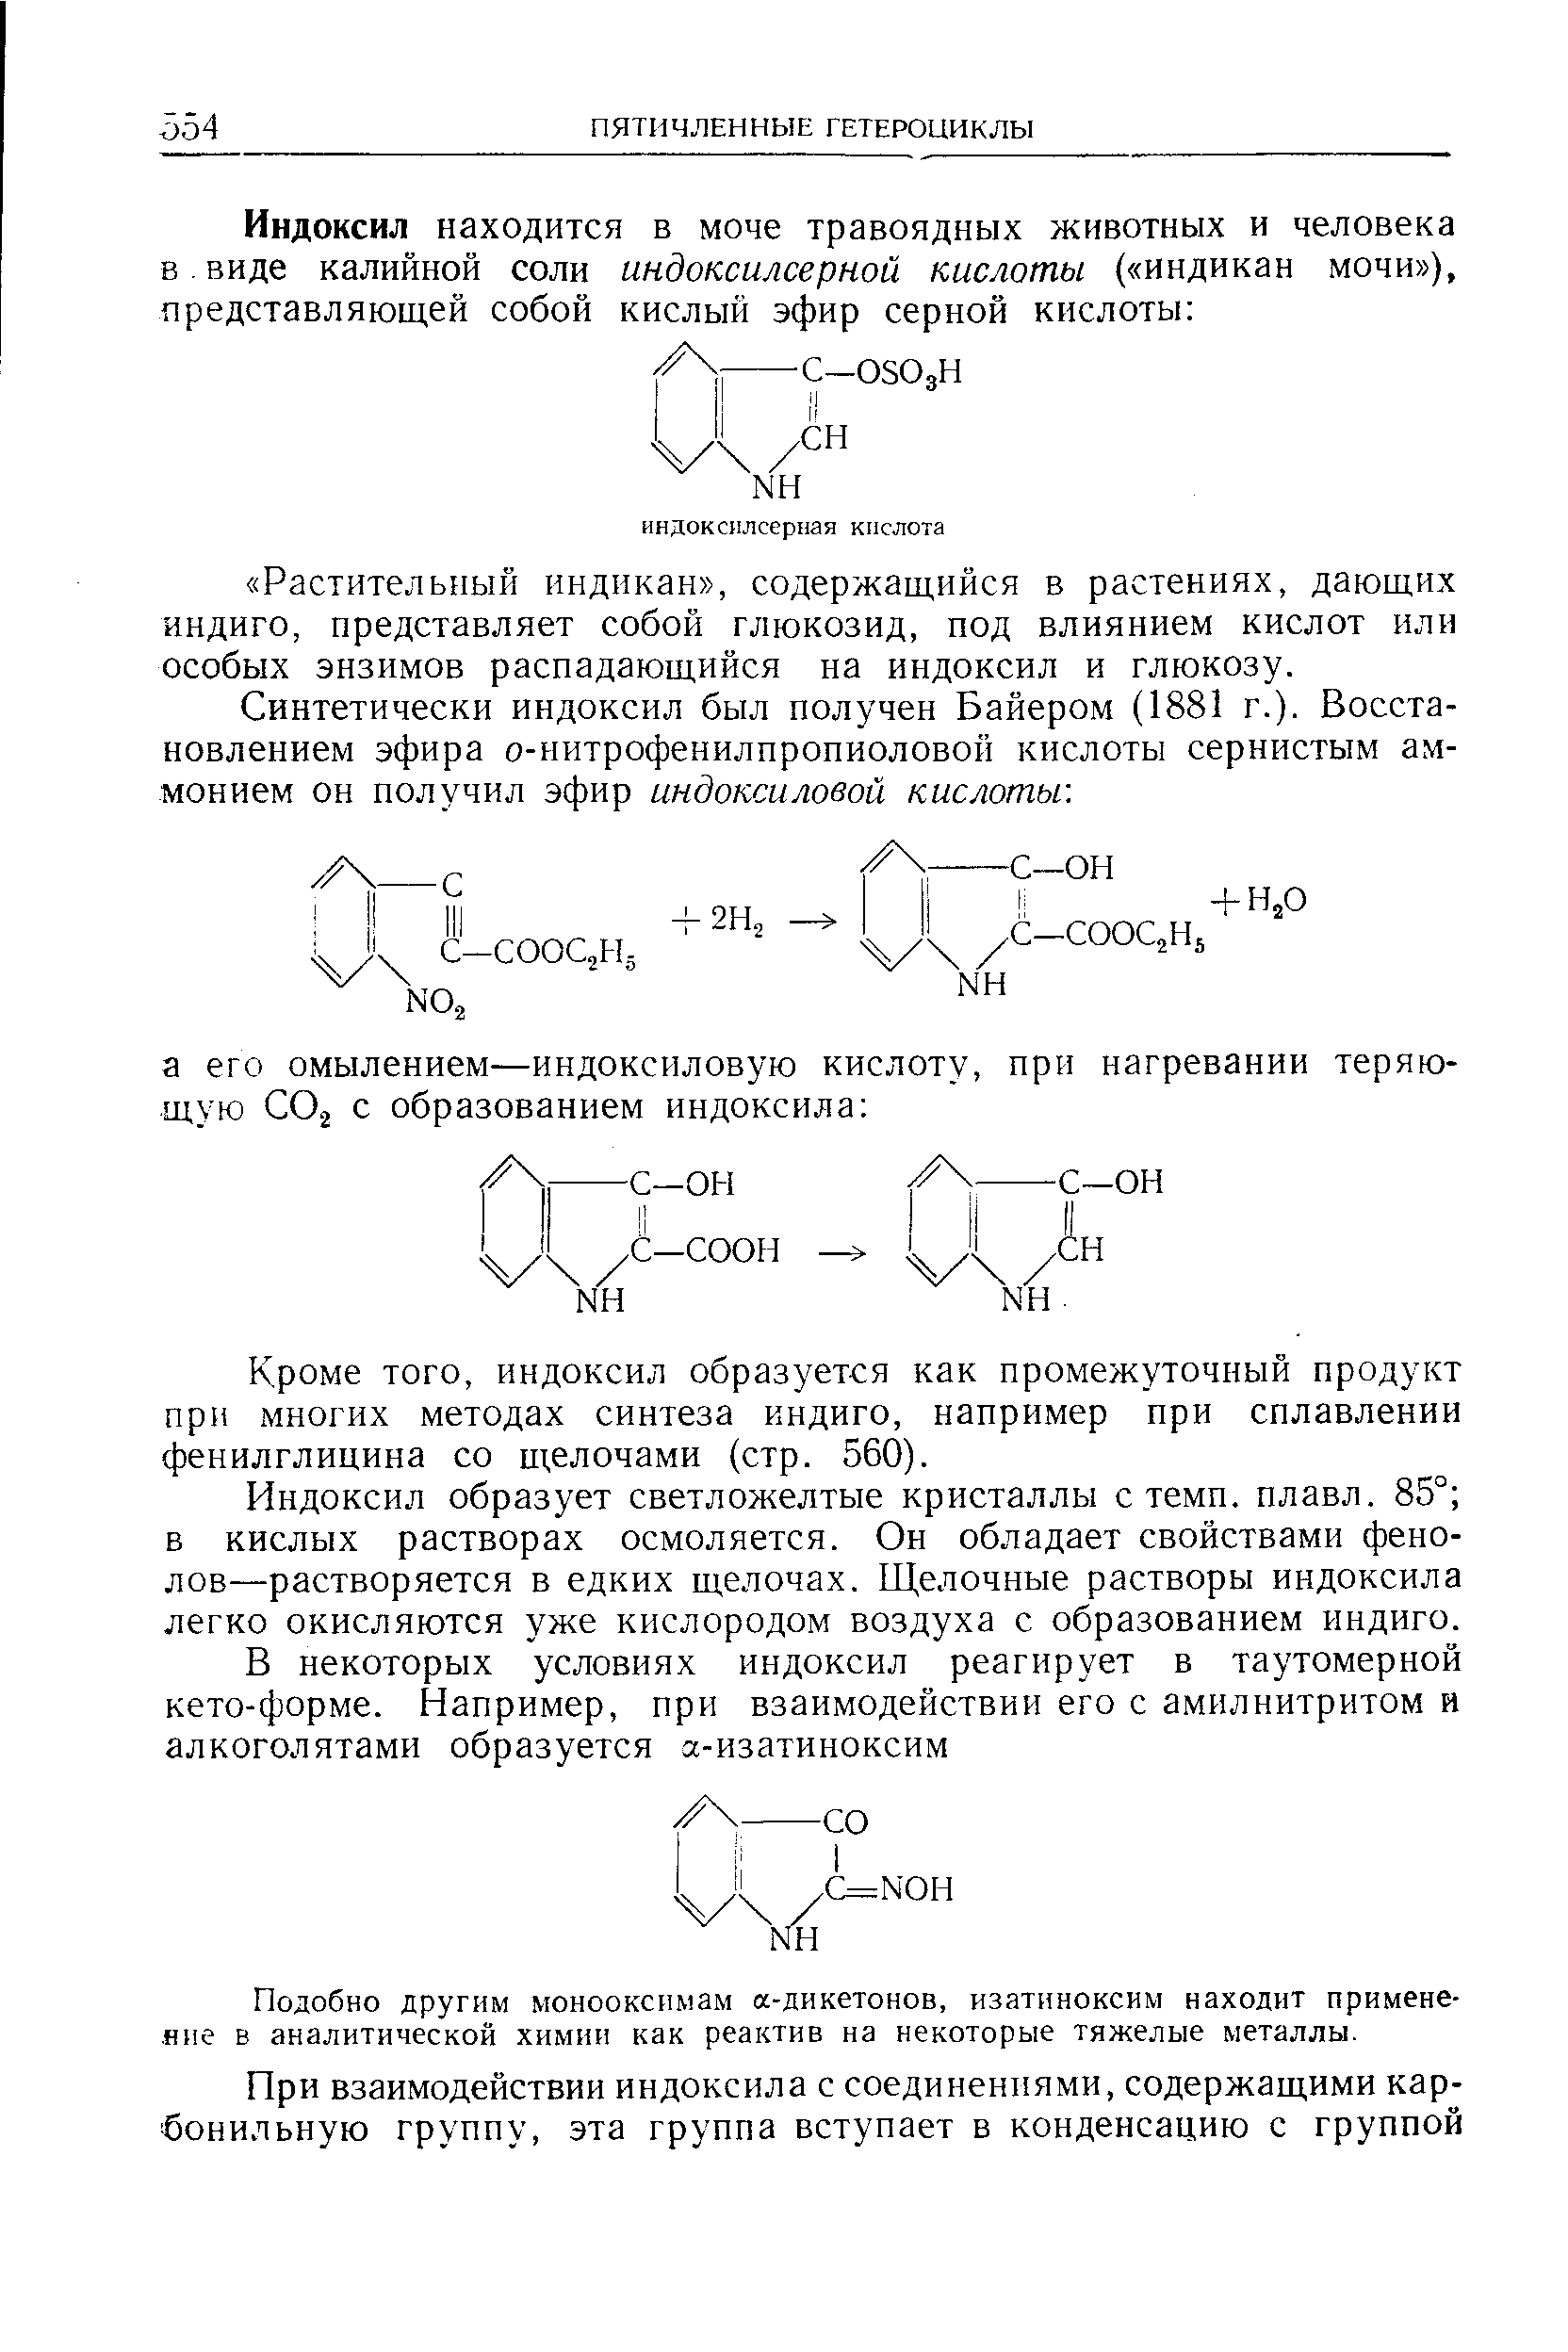 Кроме того, индоксил образуется как промежуточный продукт при многих методах синтеза индиго, например при сплавлении фенилглицина со щелочами (стр. 560).